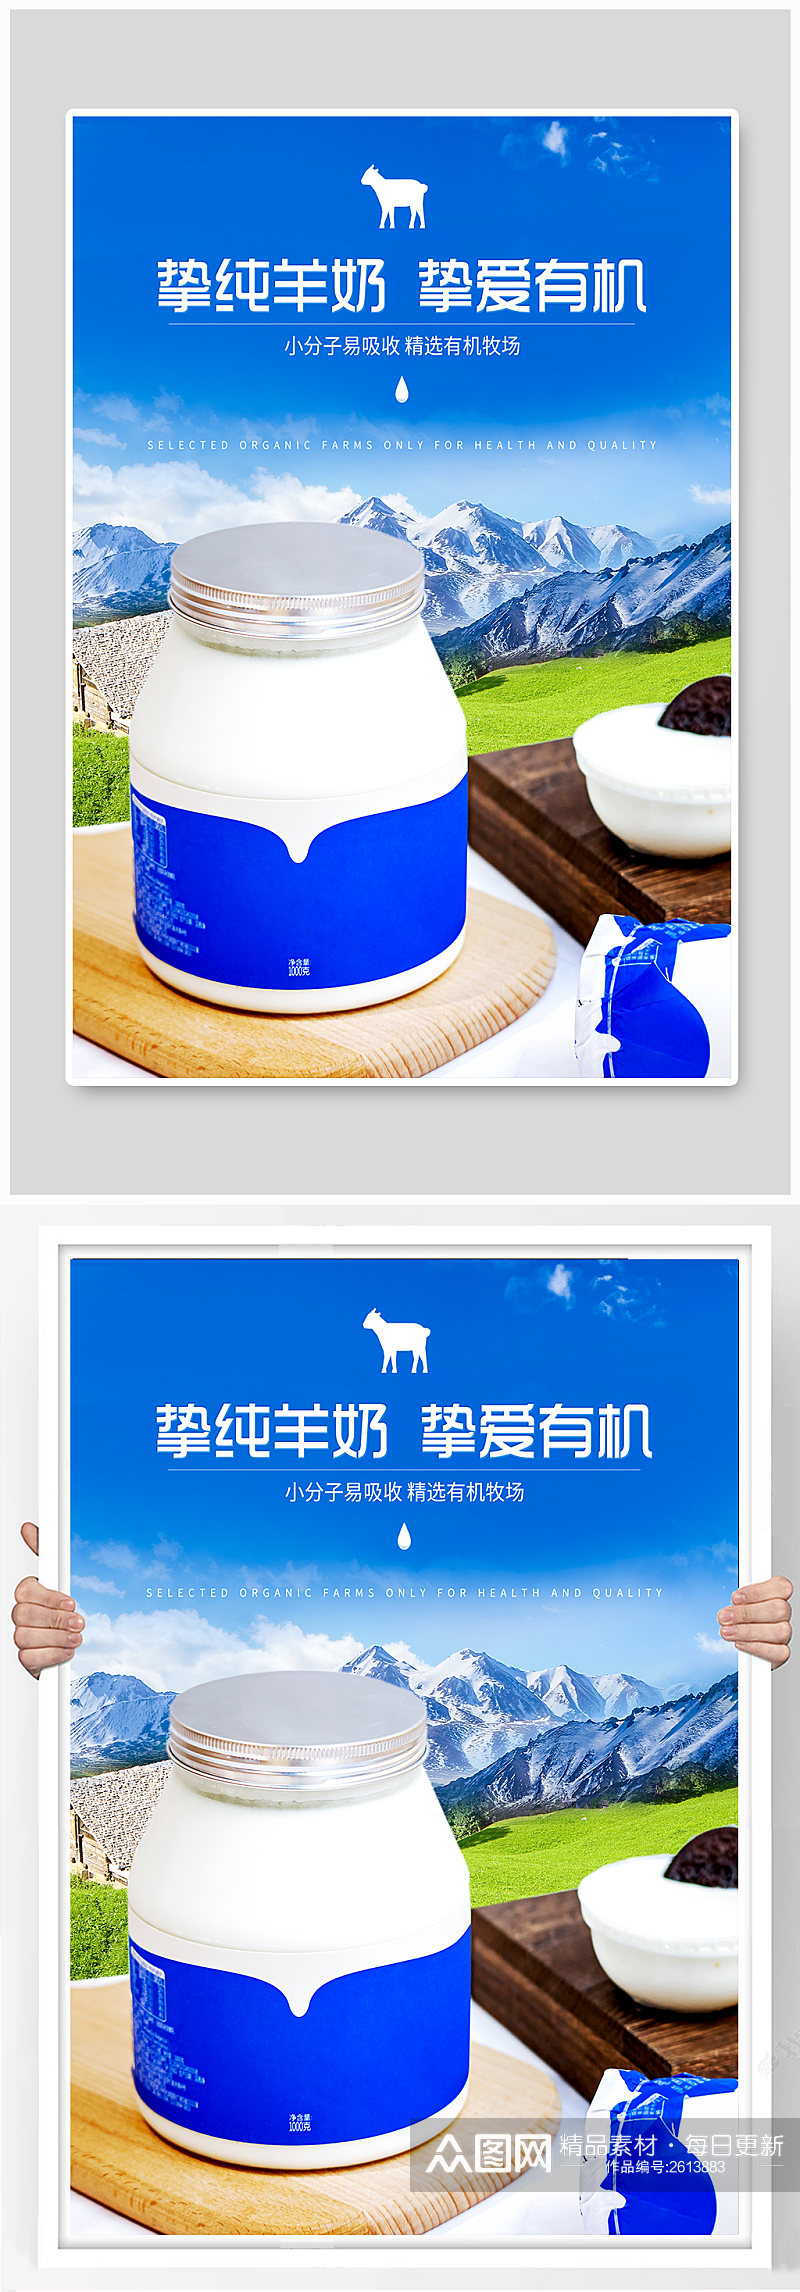 蓝色健康草原羊奶促销宣传素材